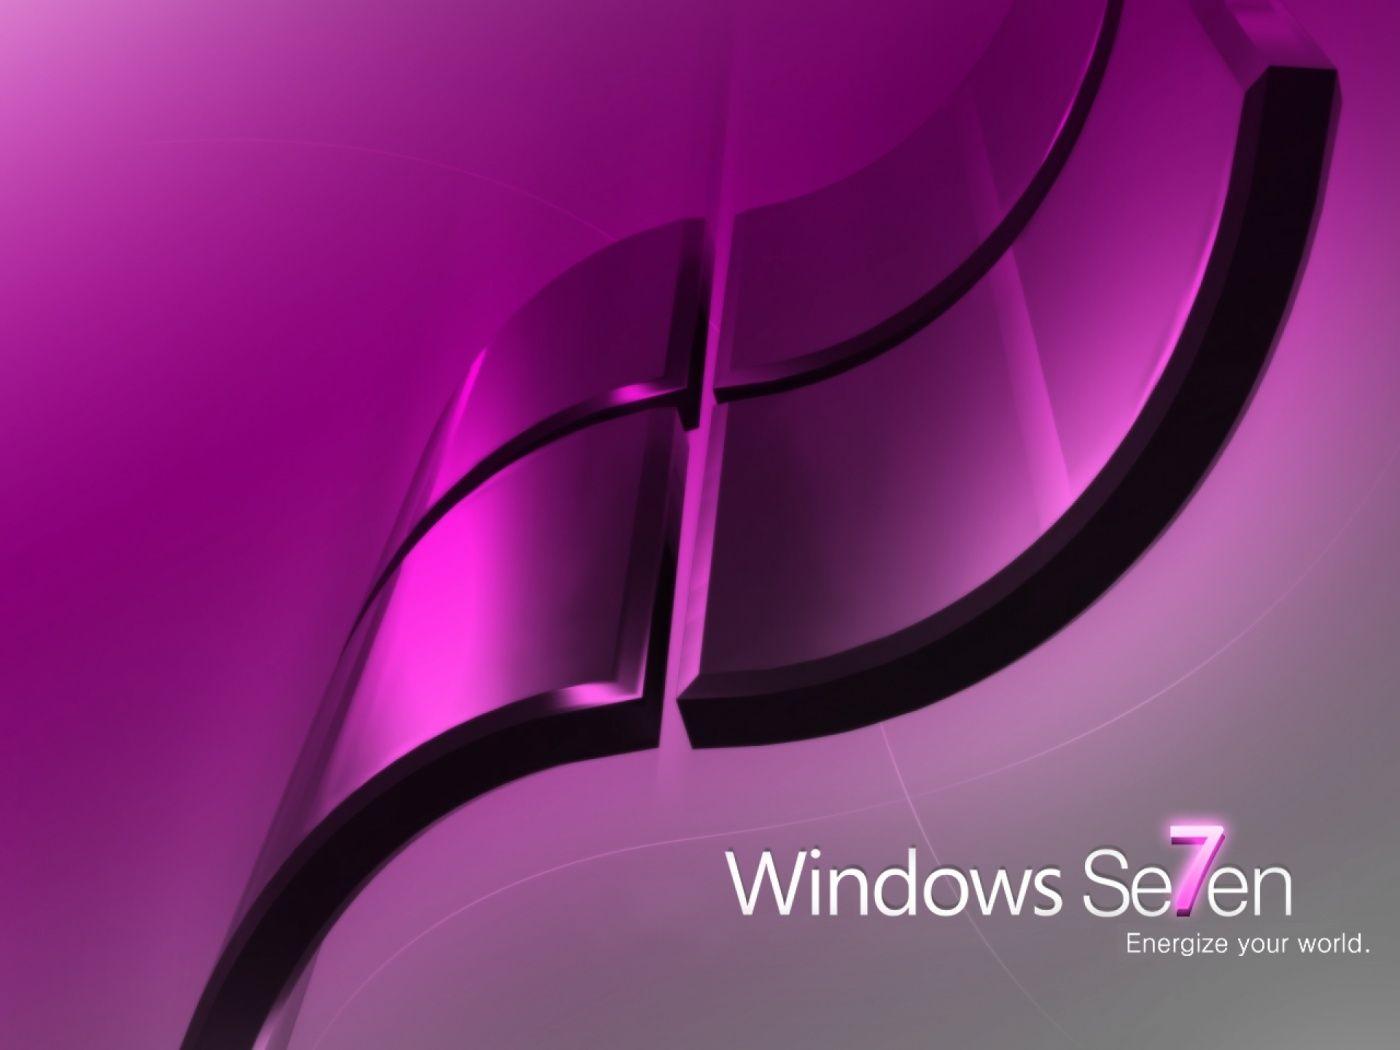 Bạn muốn sở hữu một hình nền Windows 7 màu hồng đẹp nhất, để làm nổi bật màn hình máy tính của mình? Vậy thì đừng bỏ lỡ những tuyệt phẩm đầy ấn tượng và tinh tế tại đây!